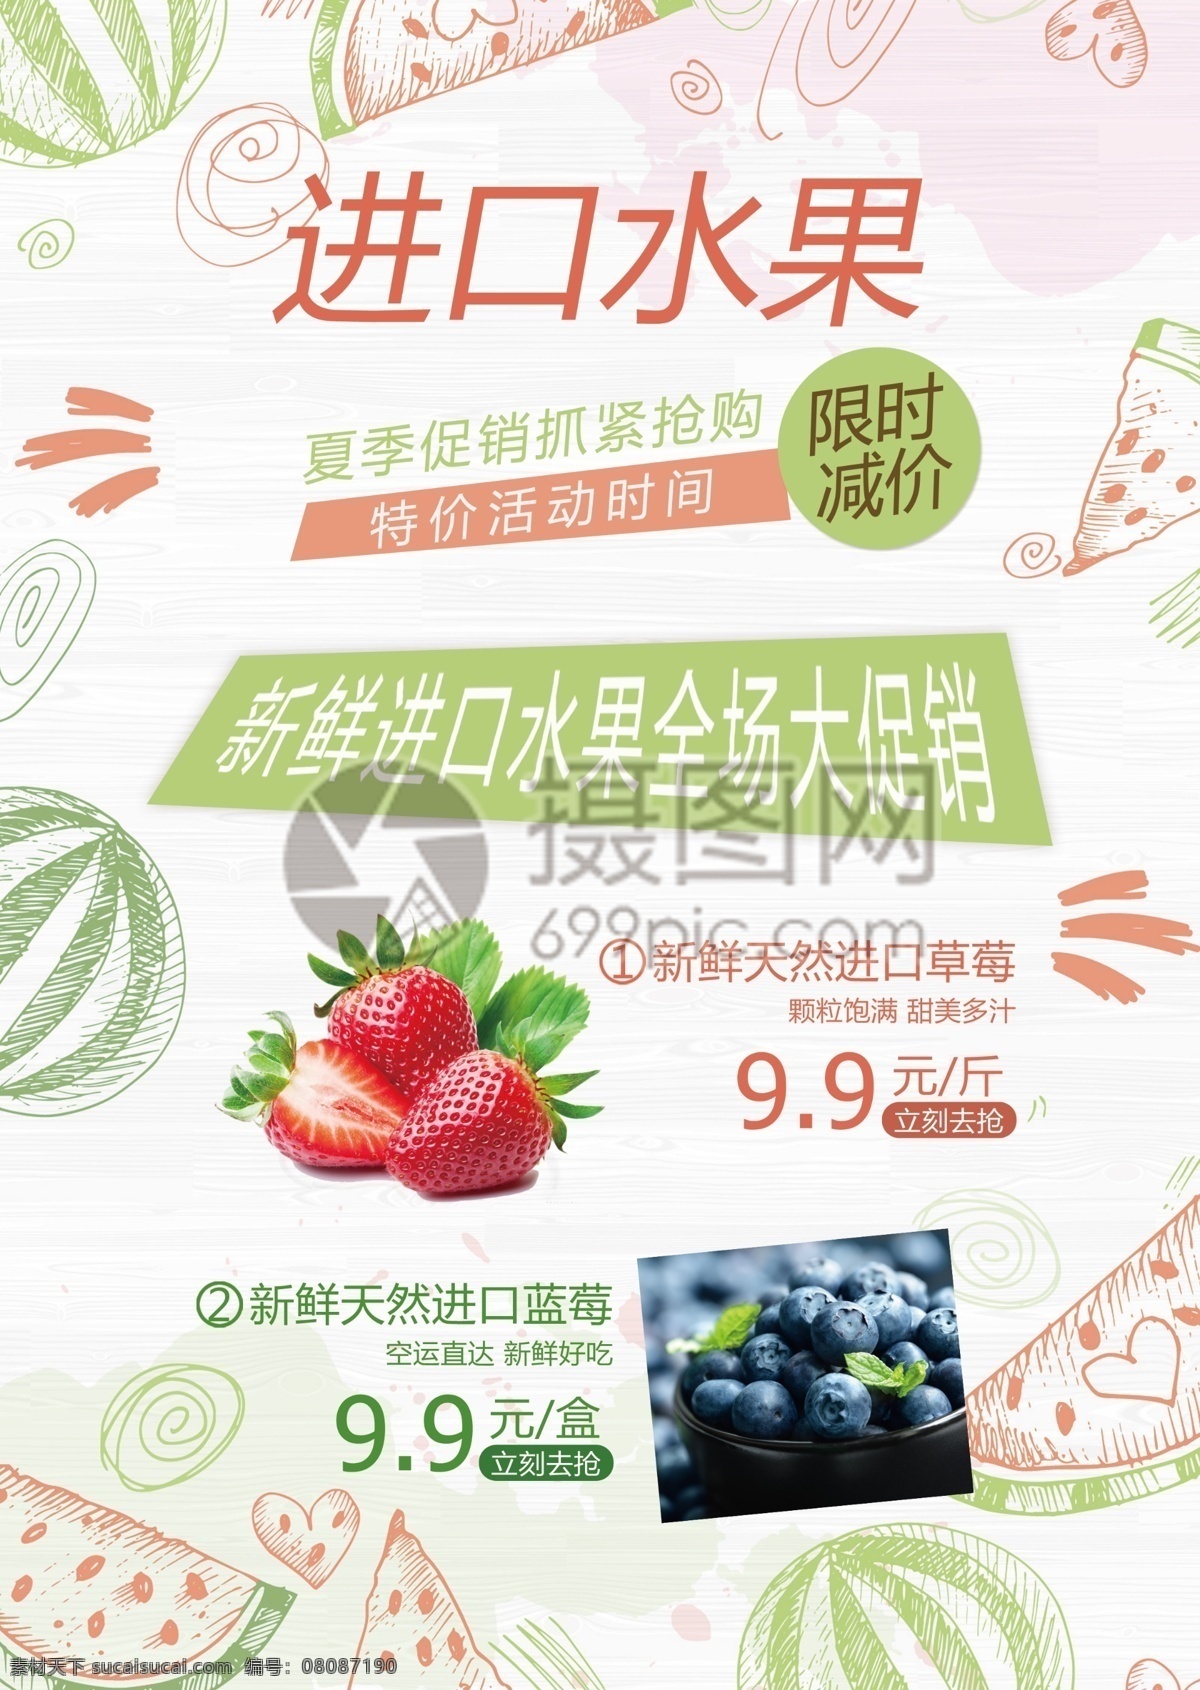 进口 水果 促销 宣传单 新鲜水果 进口水果 水果店 超市 食物 促销宣传 简约 简洁 小清新